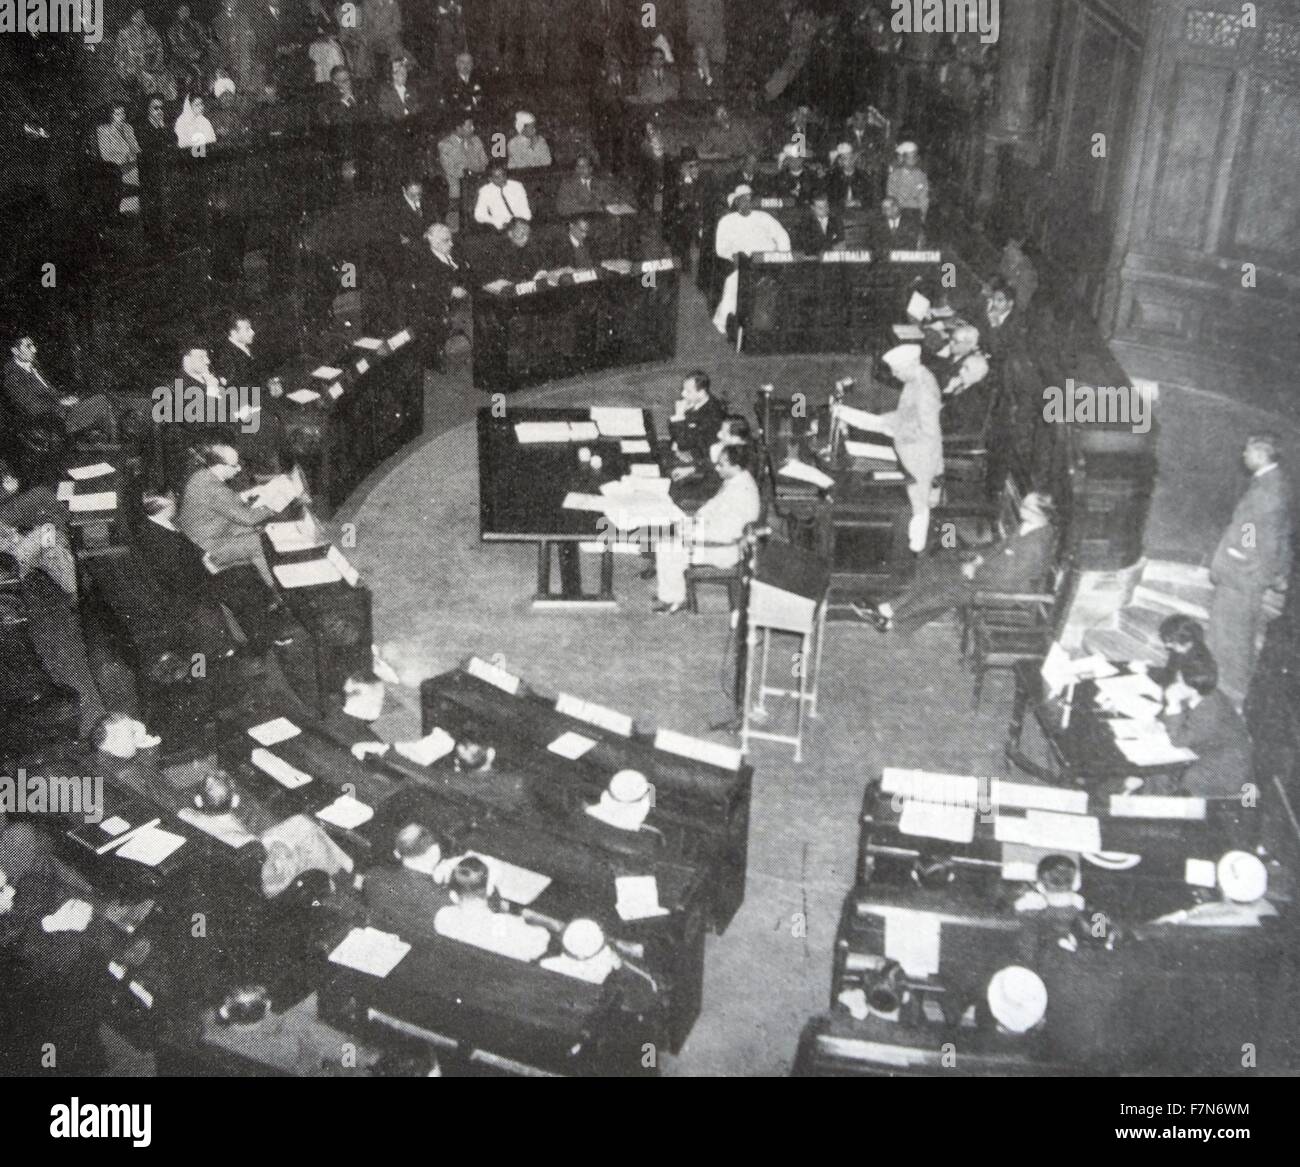 Pandit Nehru risolve la conferenza sull'Indonesia, 20-23 gennaio 1949, Delhi Foto Stock